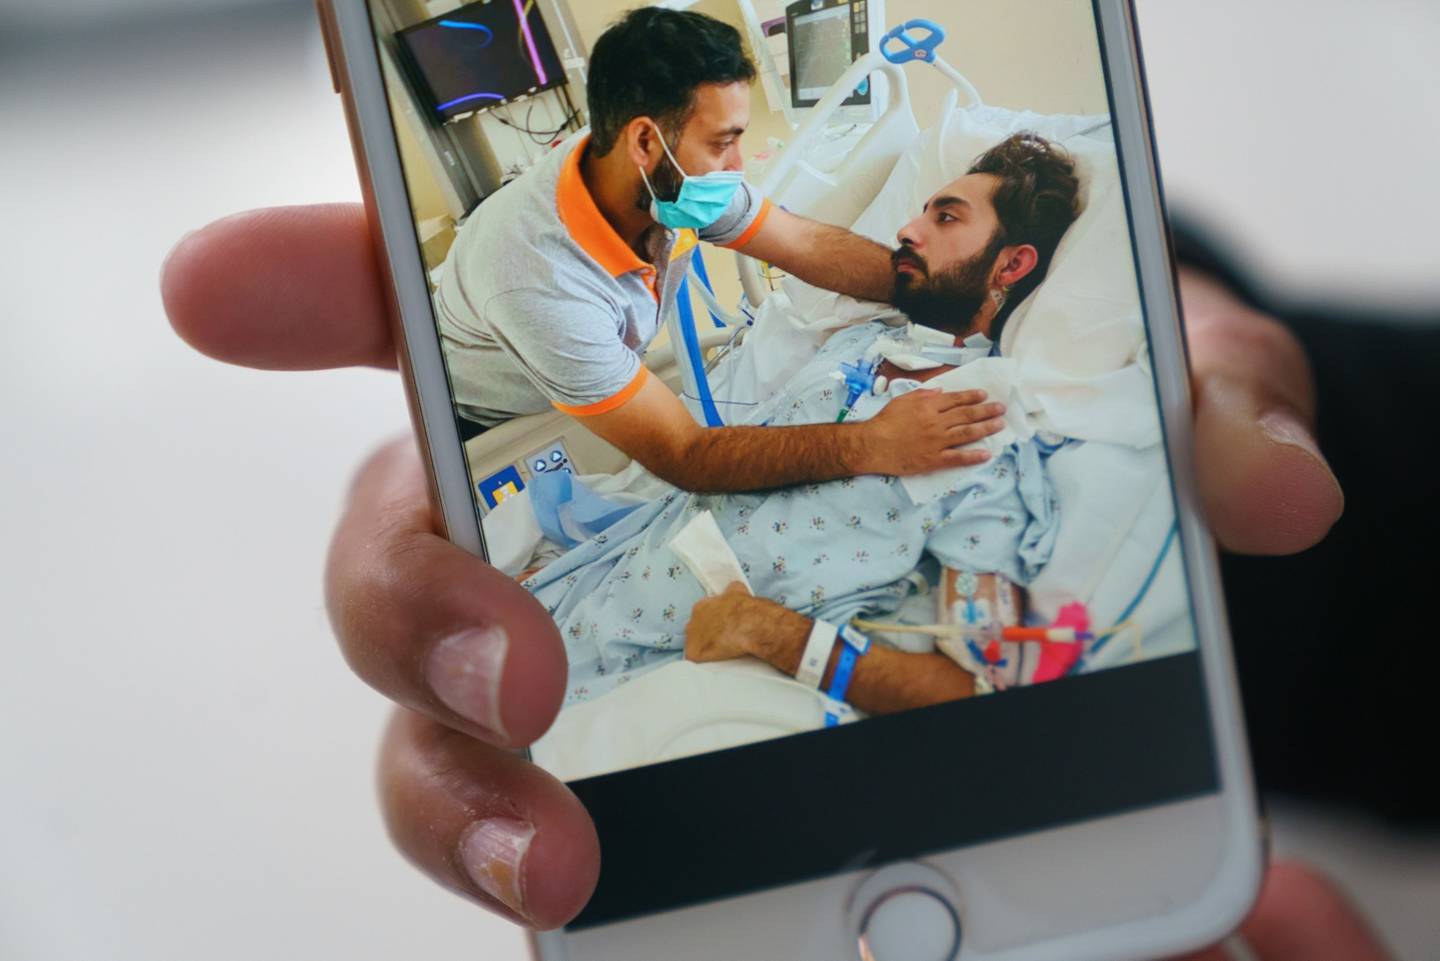 Ans Rana recibe la visita de su hermano, Ali Kamran, en el hospital tras el accidente de tráfico. Fotógrafo: Elijah Nouvelage/Bloombergdfd